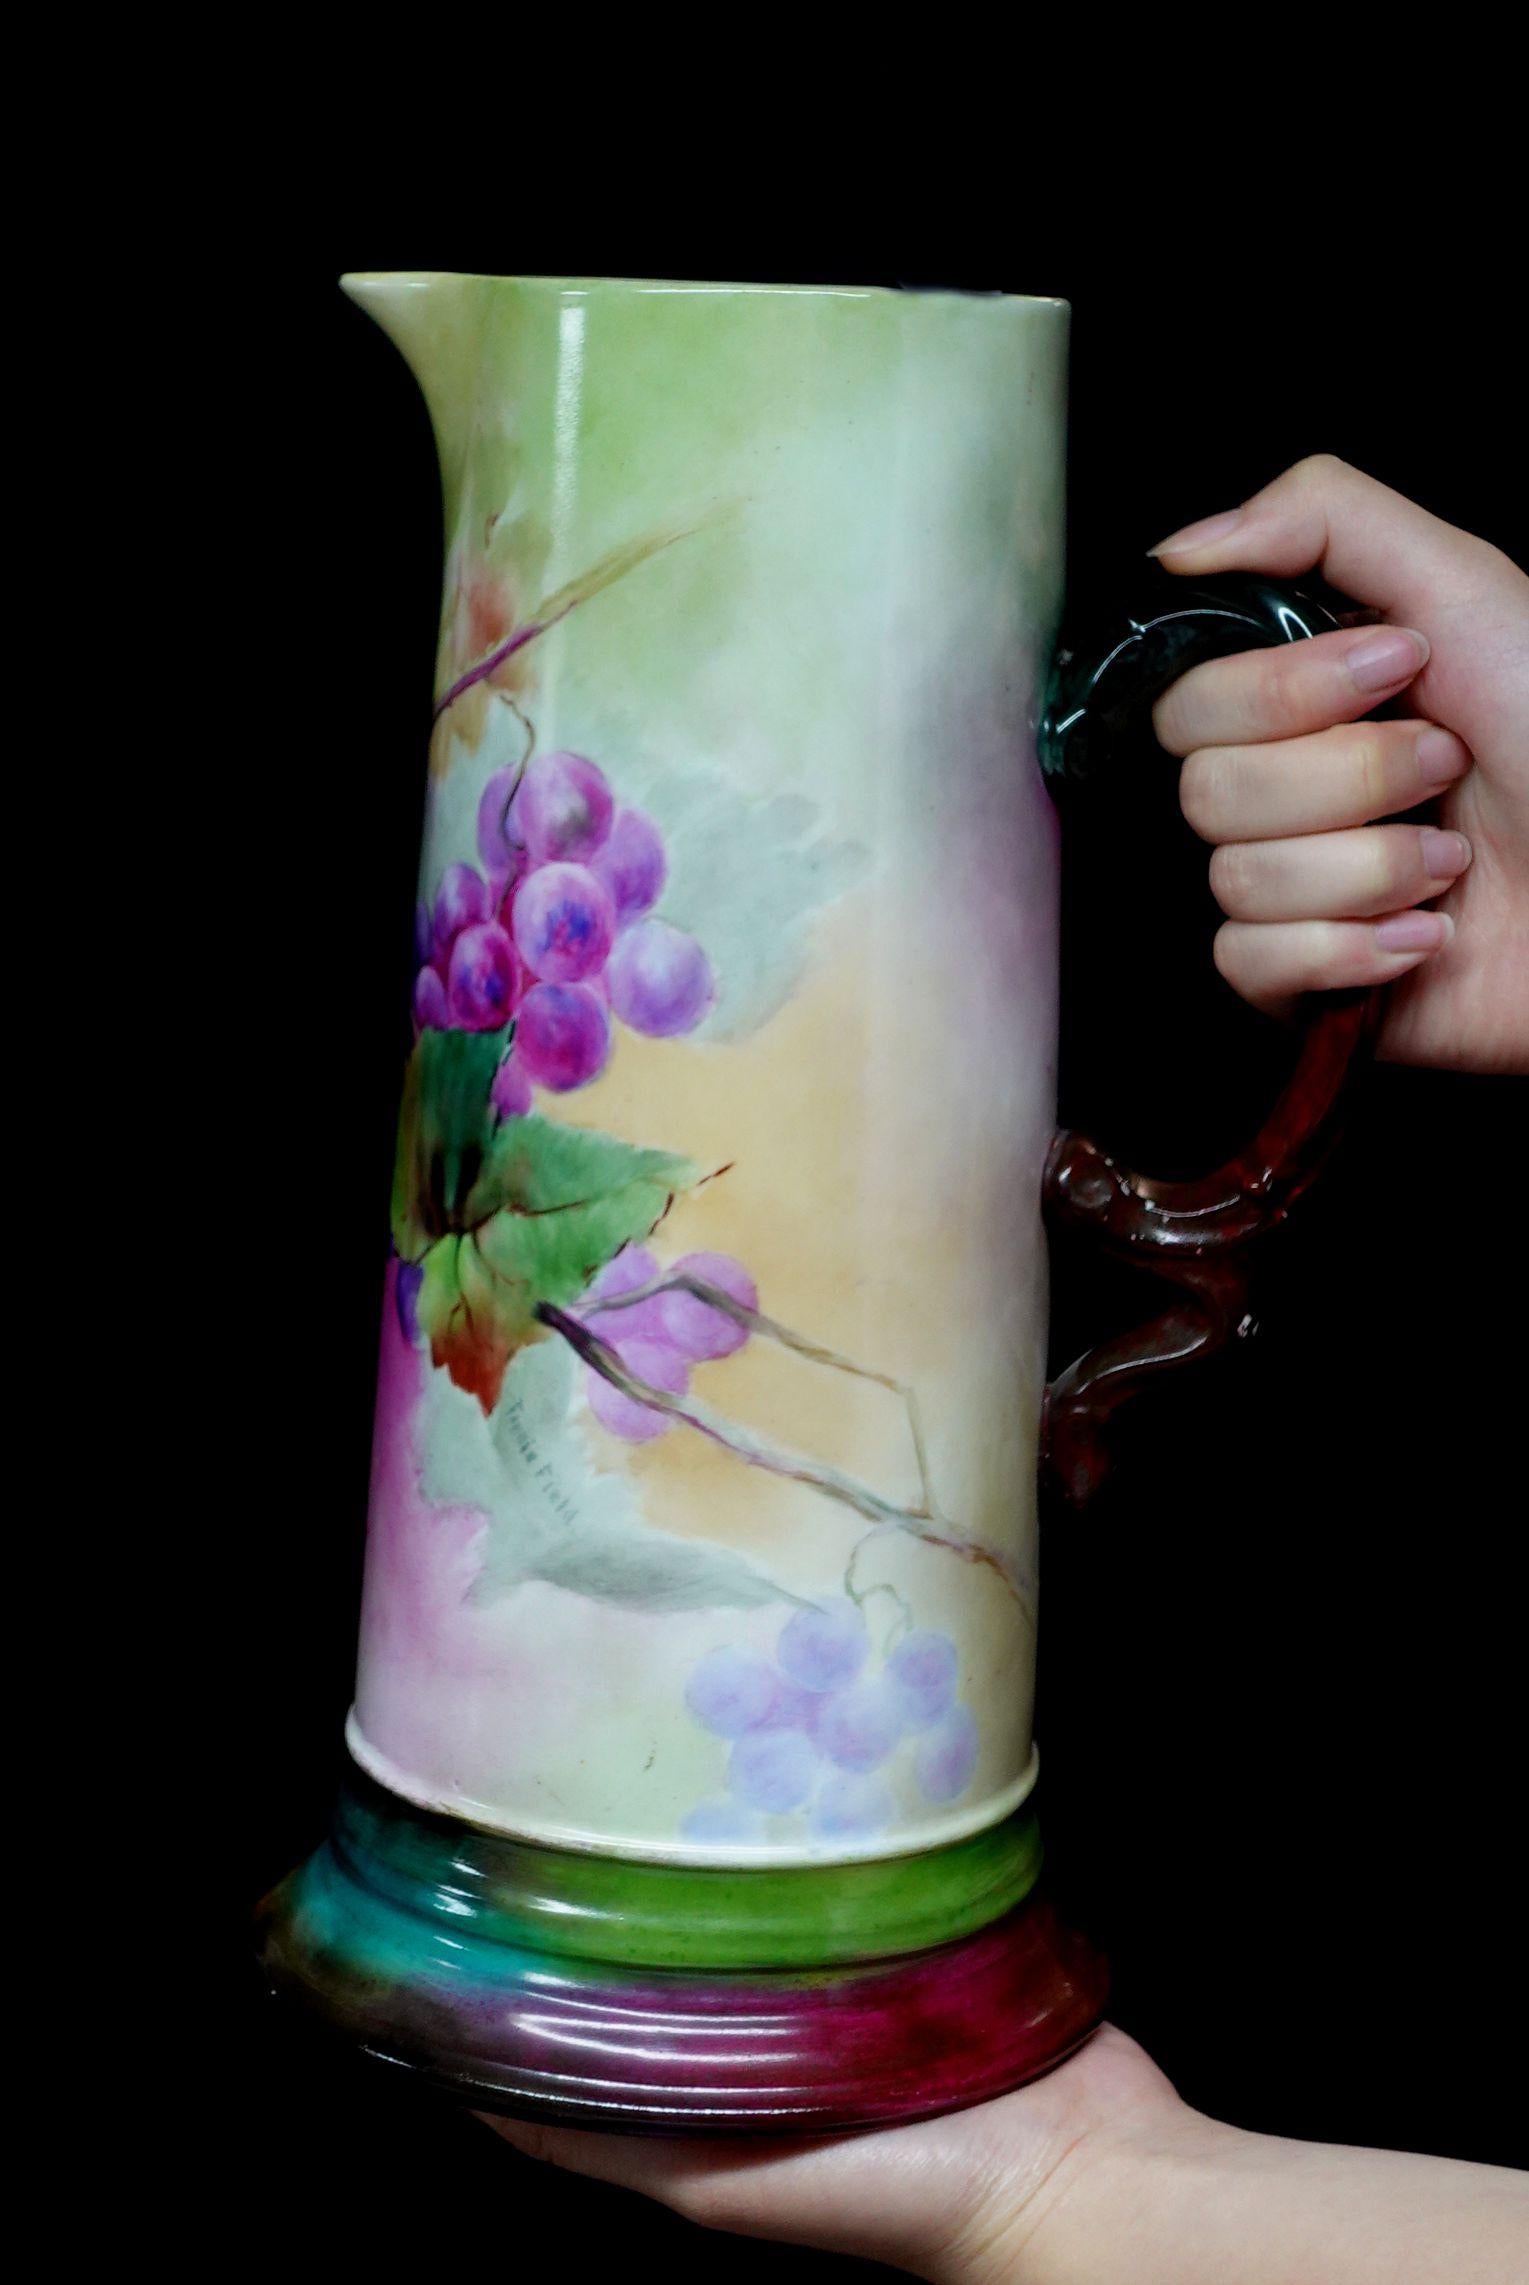 Une merveilleuse grande antiquité J.P. Cette chope en porcelaine décorée de fleurs offre un bord en forme de courbe absolument 100% peint à la main de raisins en rouge, brun-rouge, violet, et de riches feuilles vertes, un arrangement délicat de la